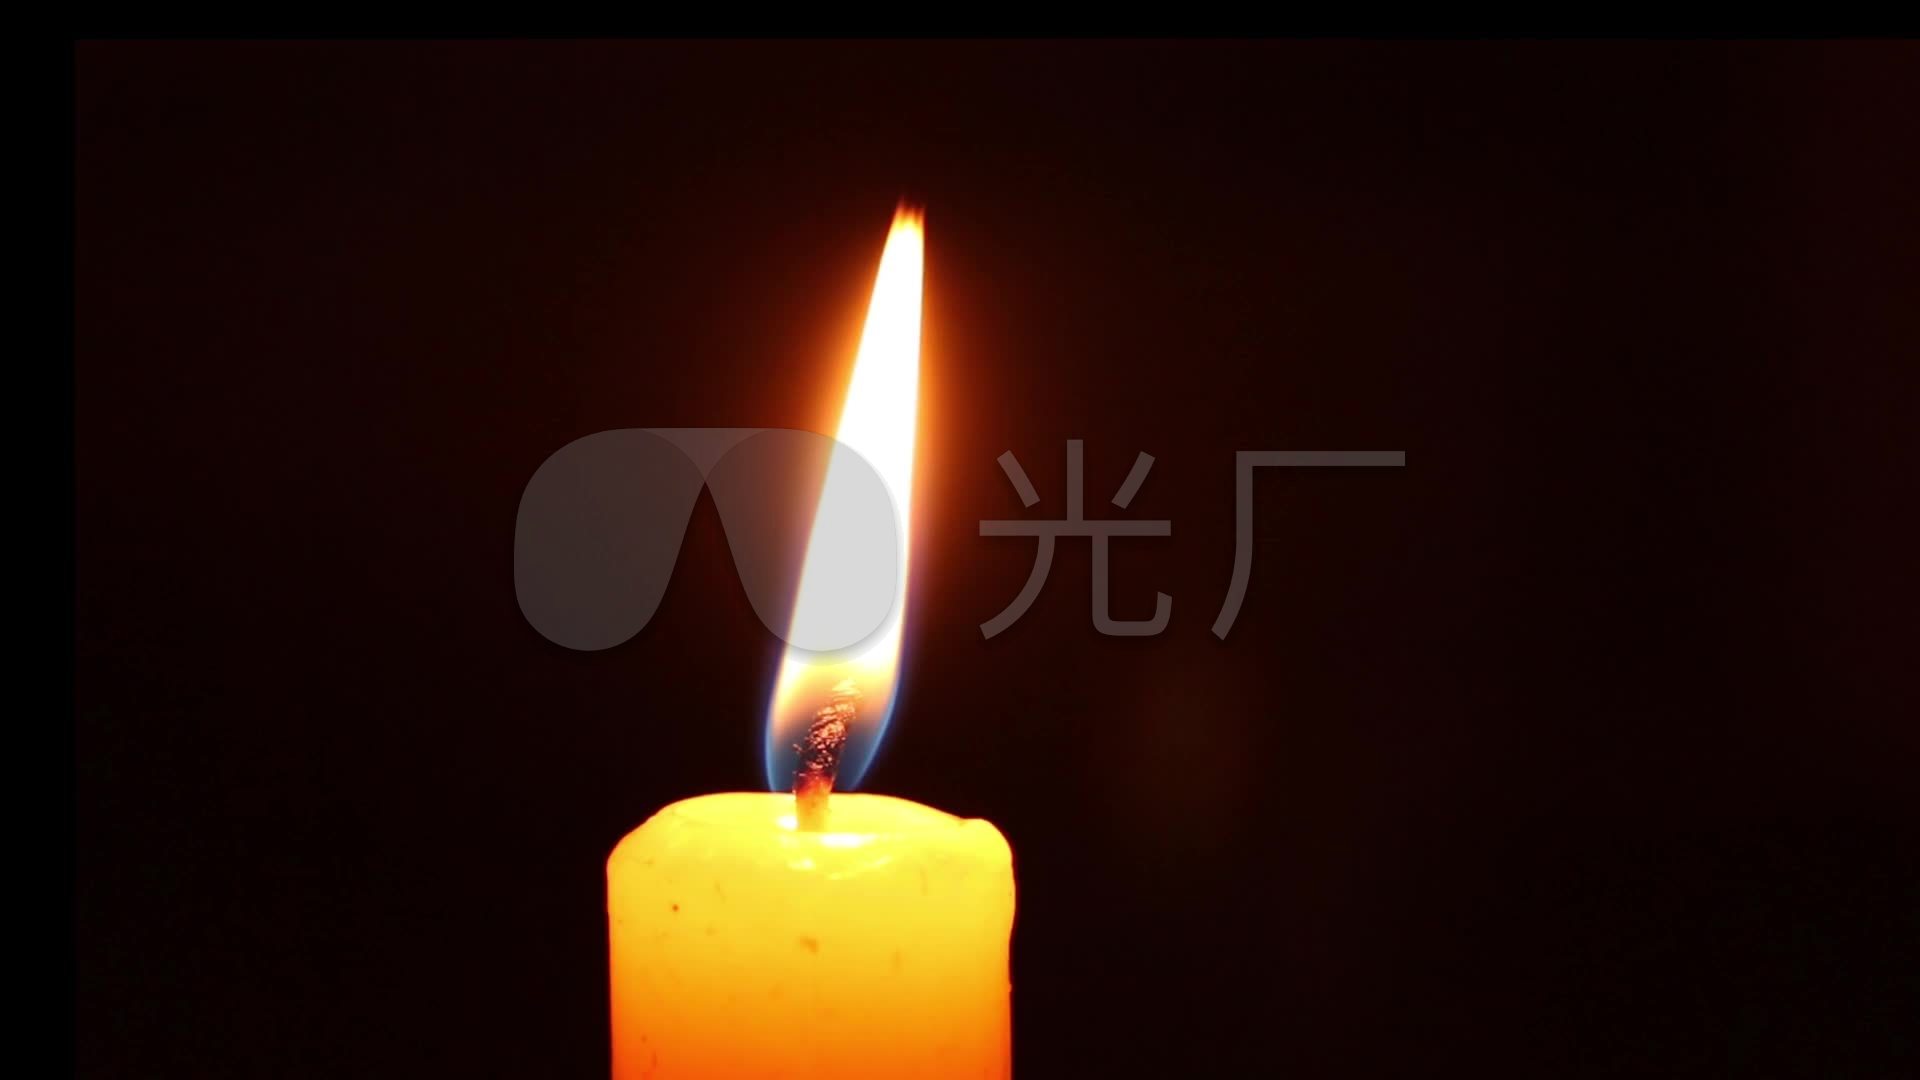 图片素材 : 火焰, 黑暗, 灯光, 装饰, 无焰蜡烛 2595x3460 - - 484158 - 素材中国, 高清壁纸 - PxHere摄影图库